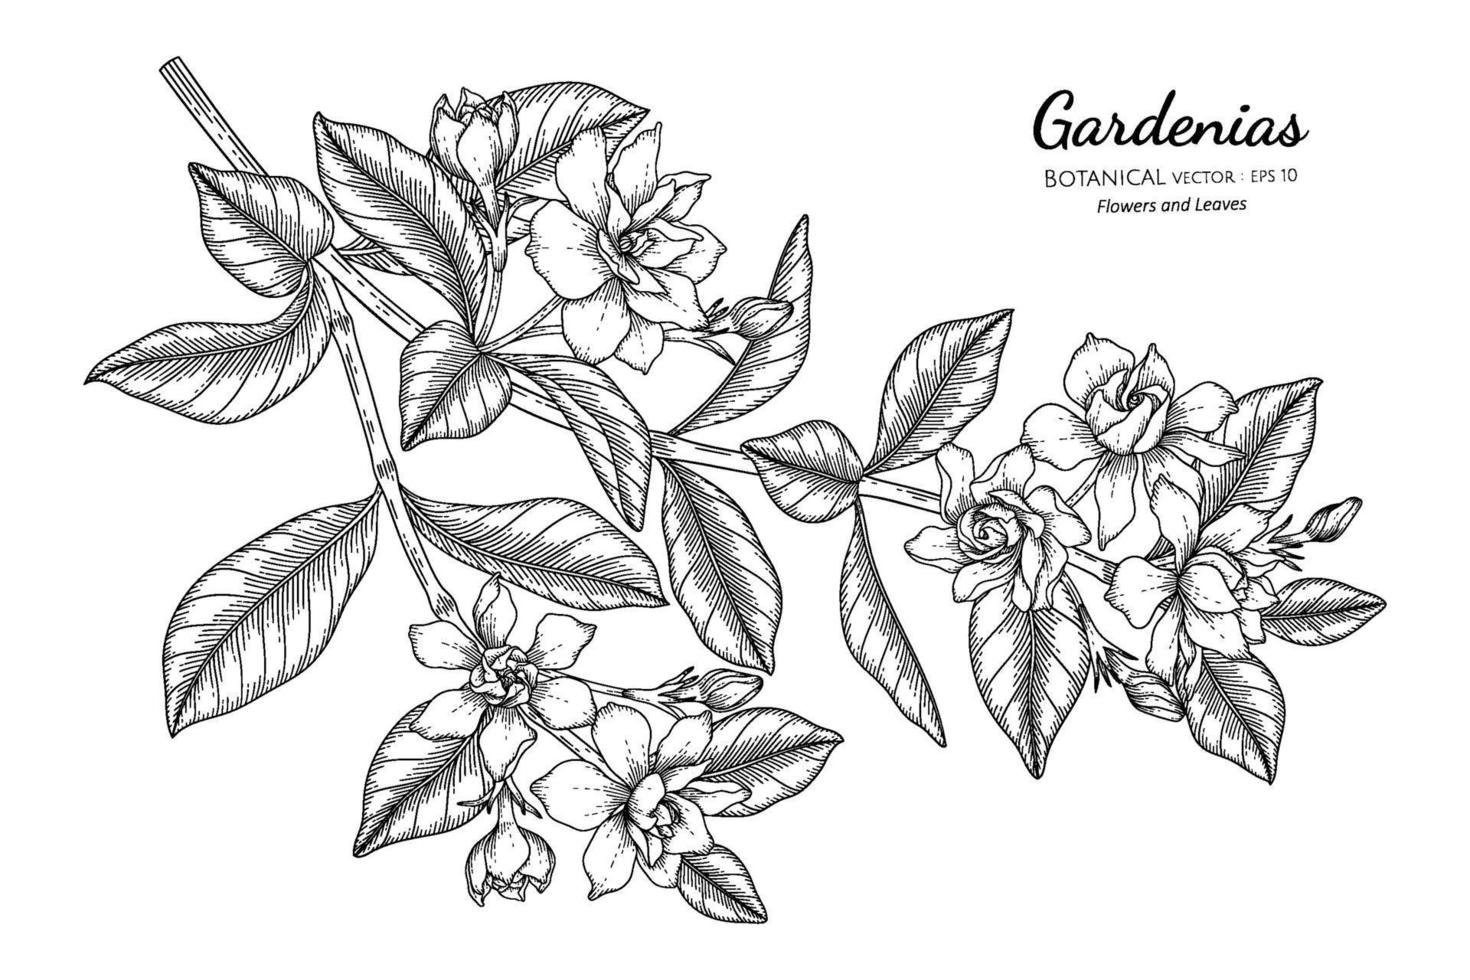 illustrazione botanica disegnata a mano di fiori e foglie di gardenie con disegni al tratto. vettore